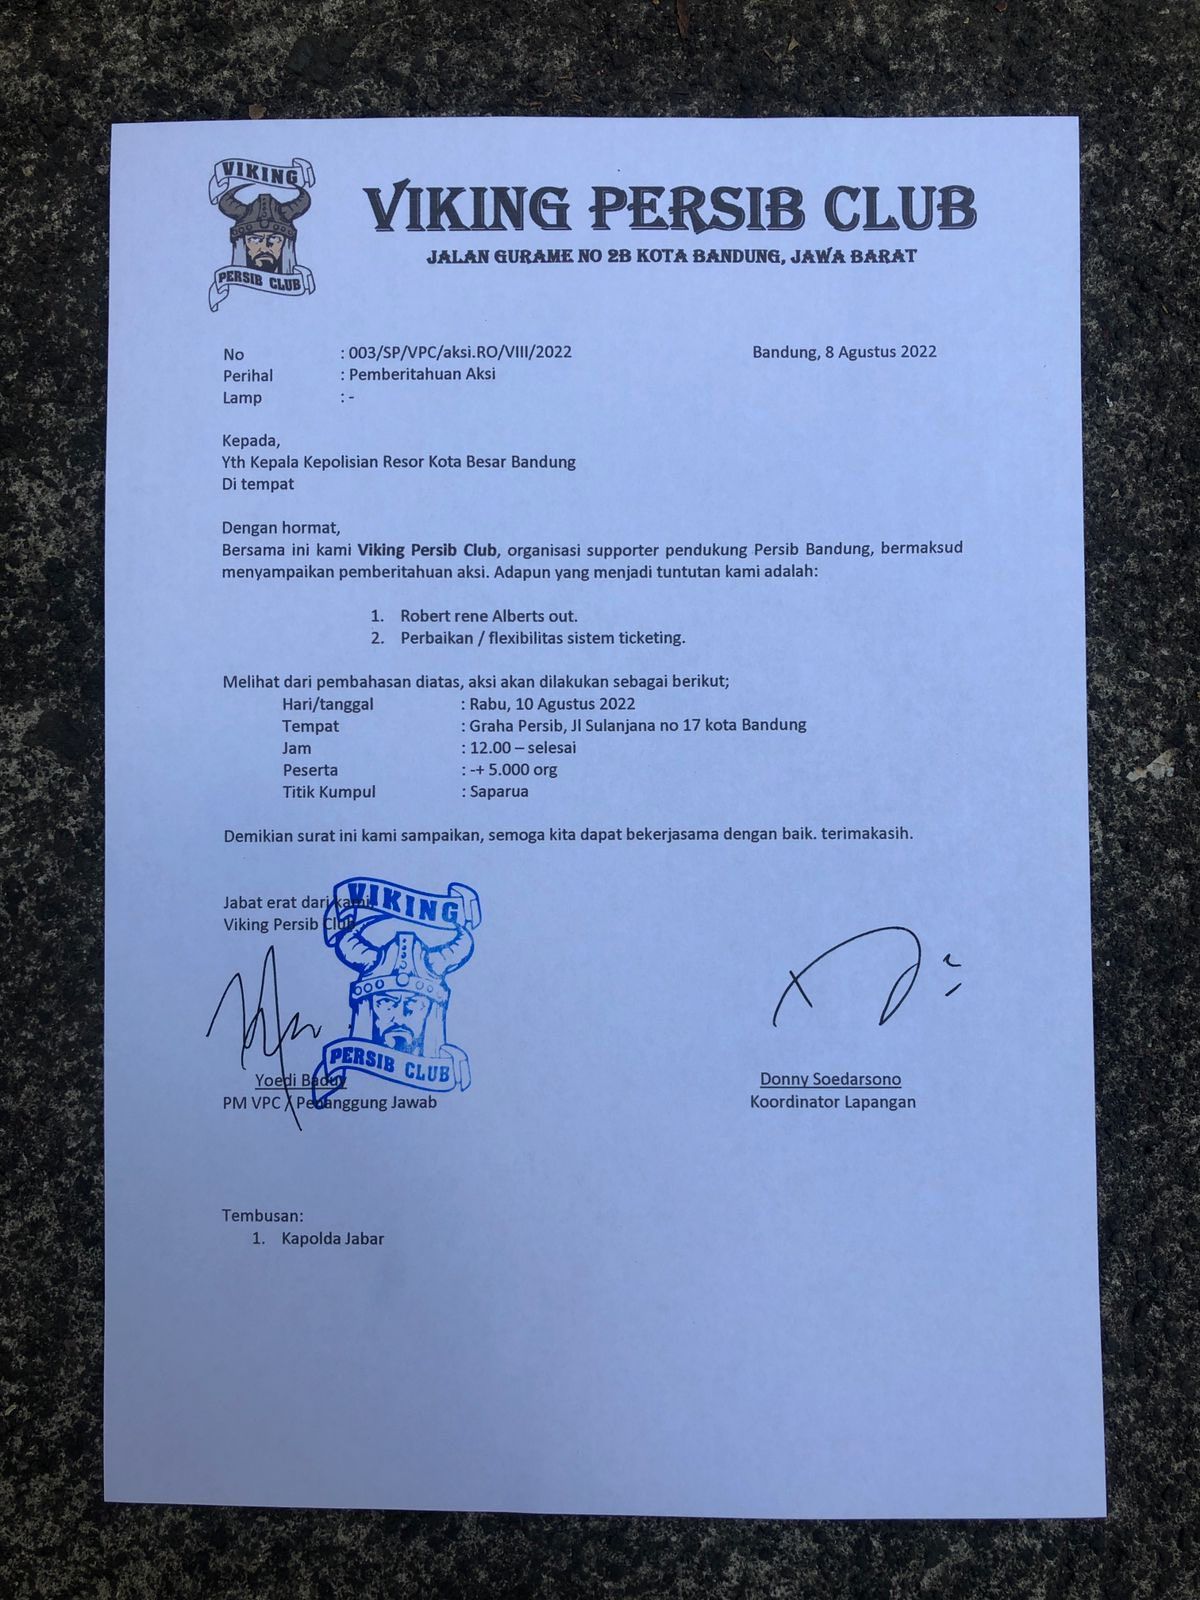 Viking Gelar Demo Besar di Kantor Persib Besok 10 Agustus 2022, Ini Tuntutannya